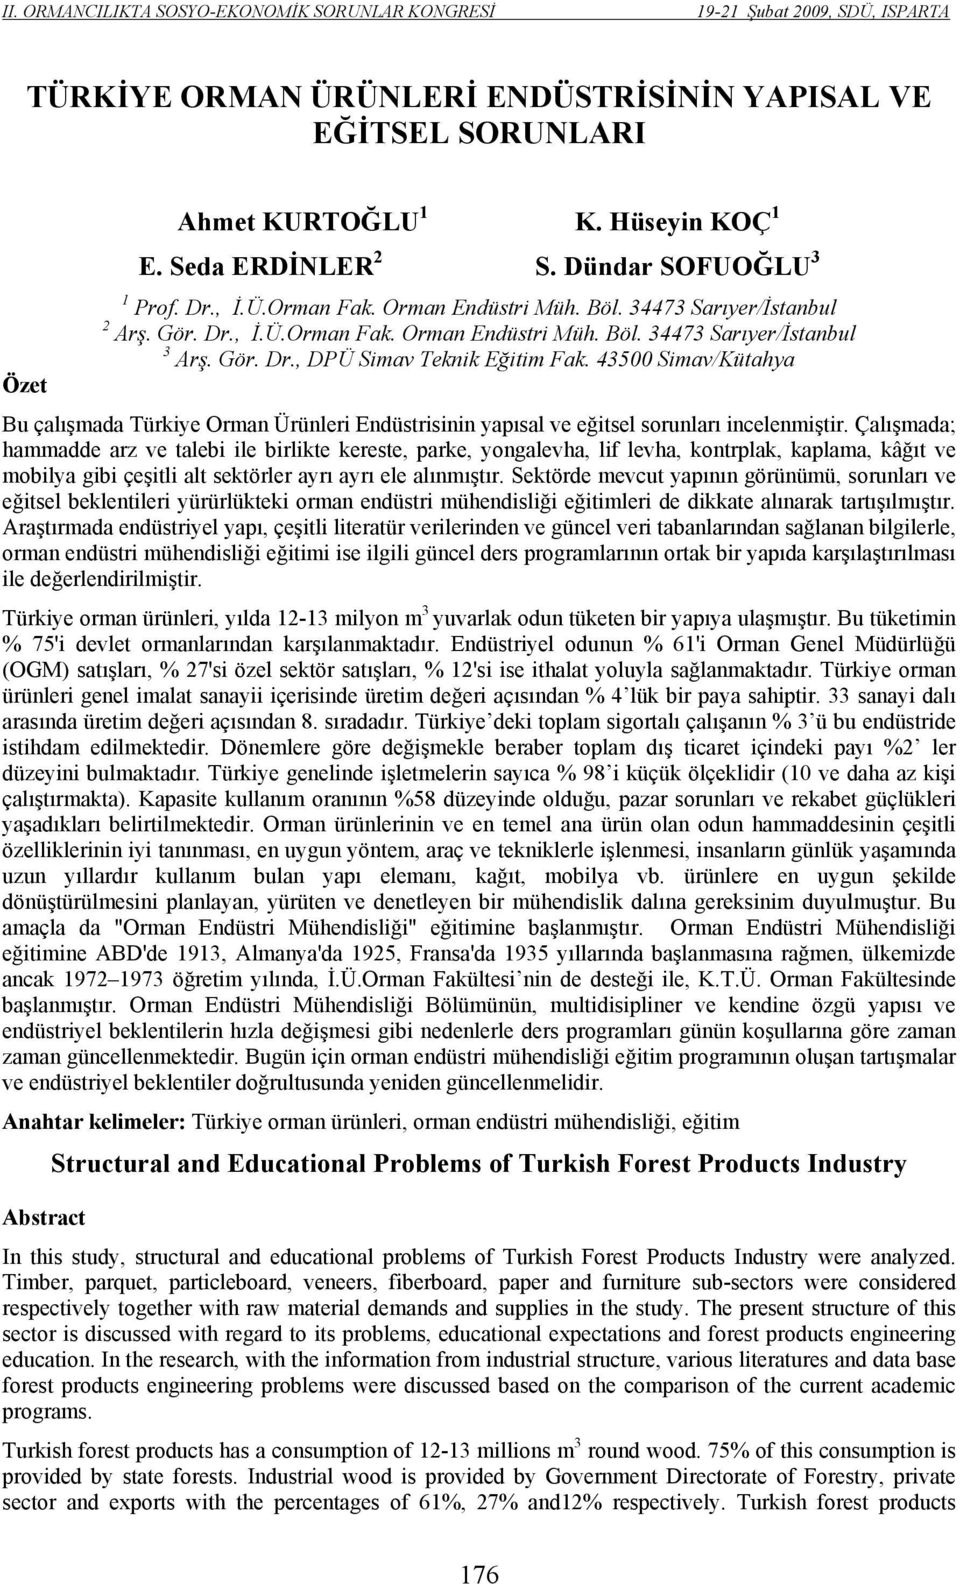 43500 Simav/Kütahya Bu çalışmada Türkiye Orman Ürünleri Endüstrisinin yapısal ve eğitsel sorunları incelenmiştir.